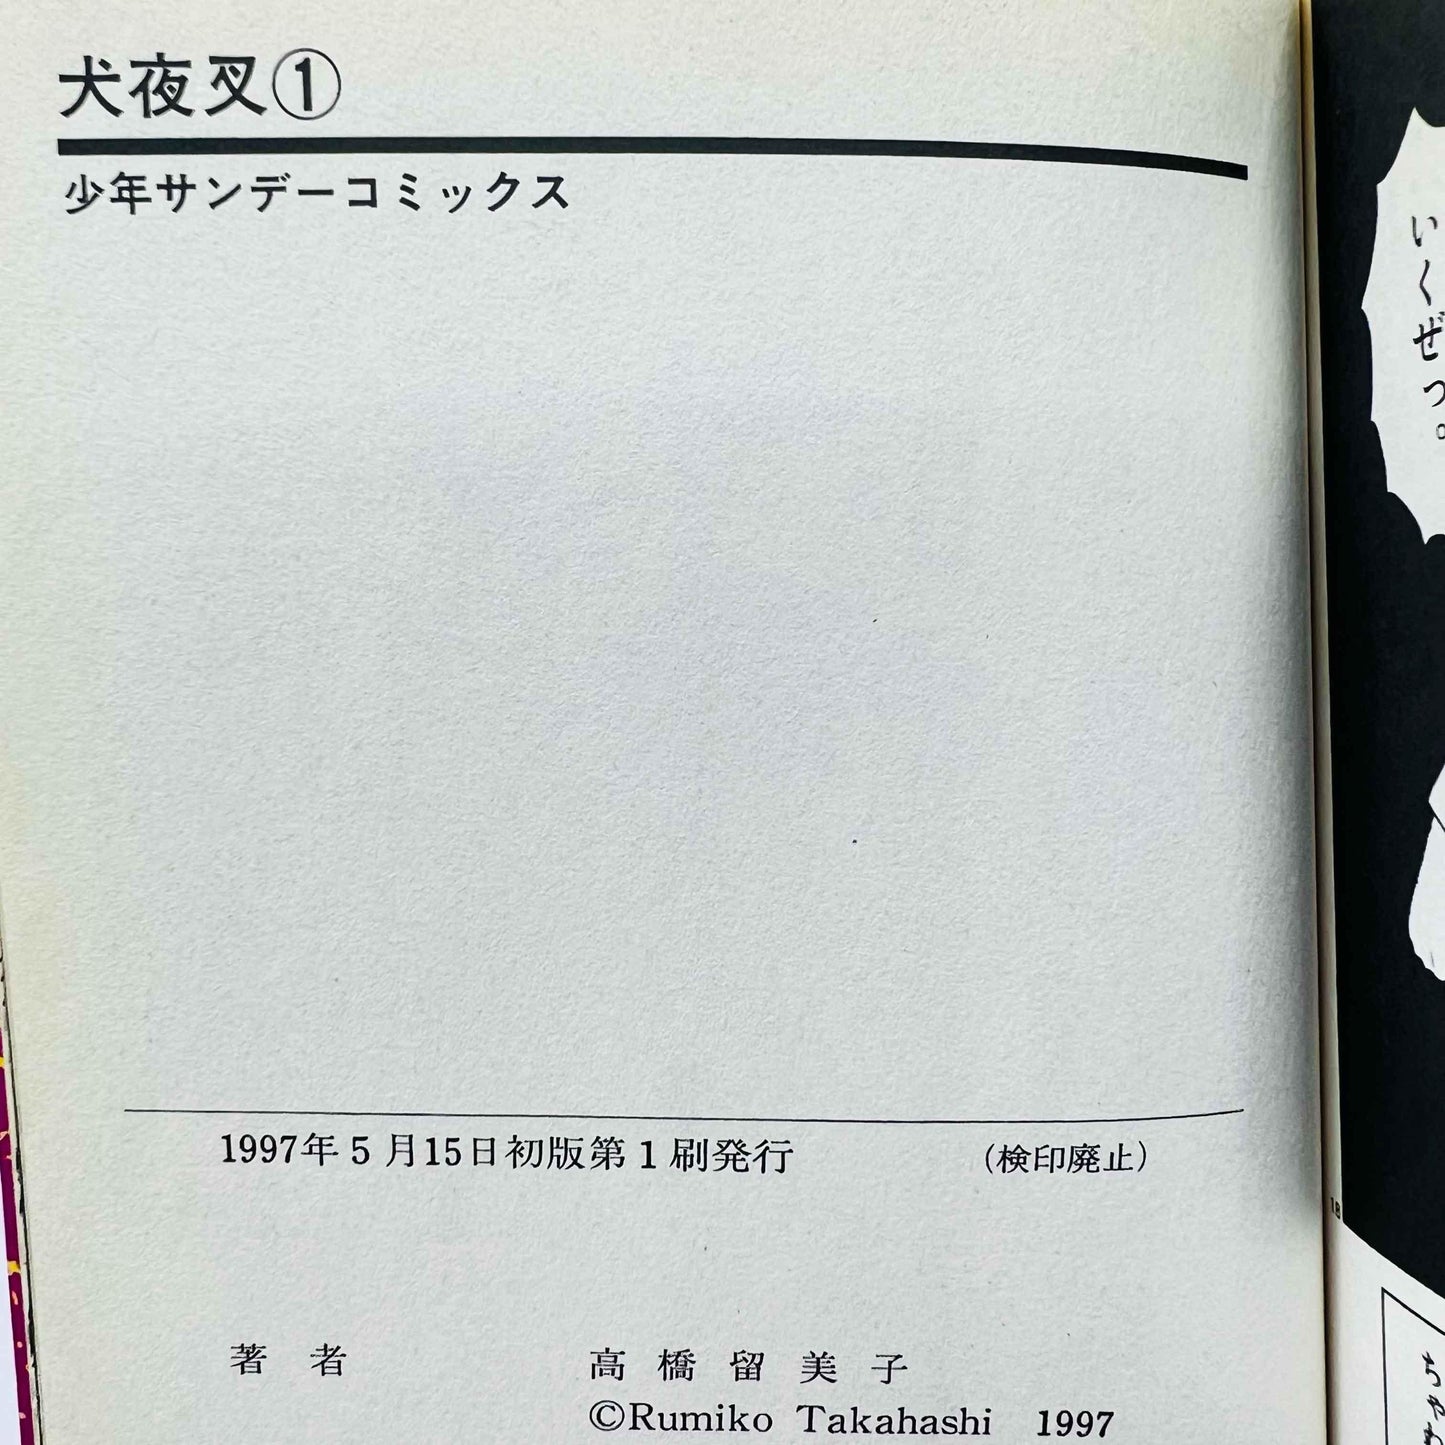 Inuyasha - Volume 01 - 1stPrint.net - 1st First Print Edition Manga Store - M-INU-01-004